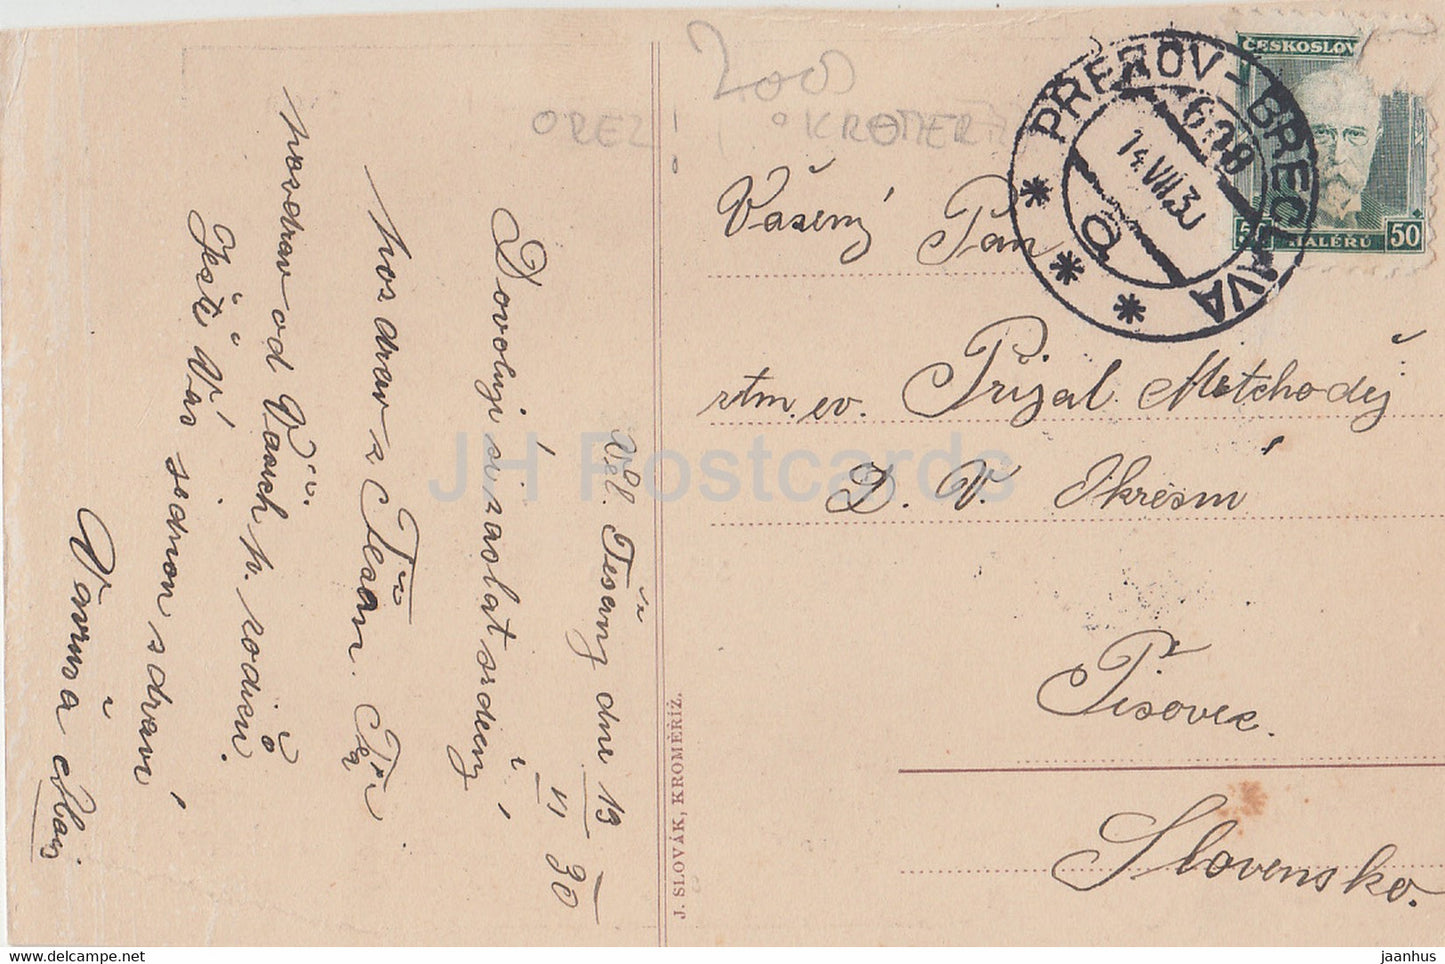 Tesany Velke u Kromerize - école - carte postale ancienne - 1930 - République tchèque - Tchécoslovaquie - utilisé